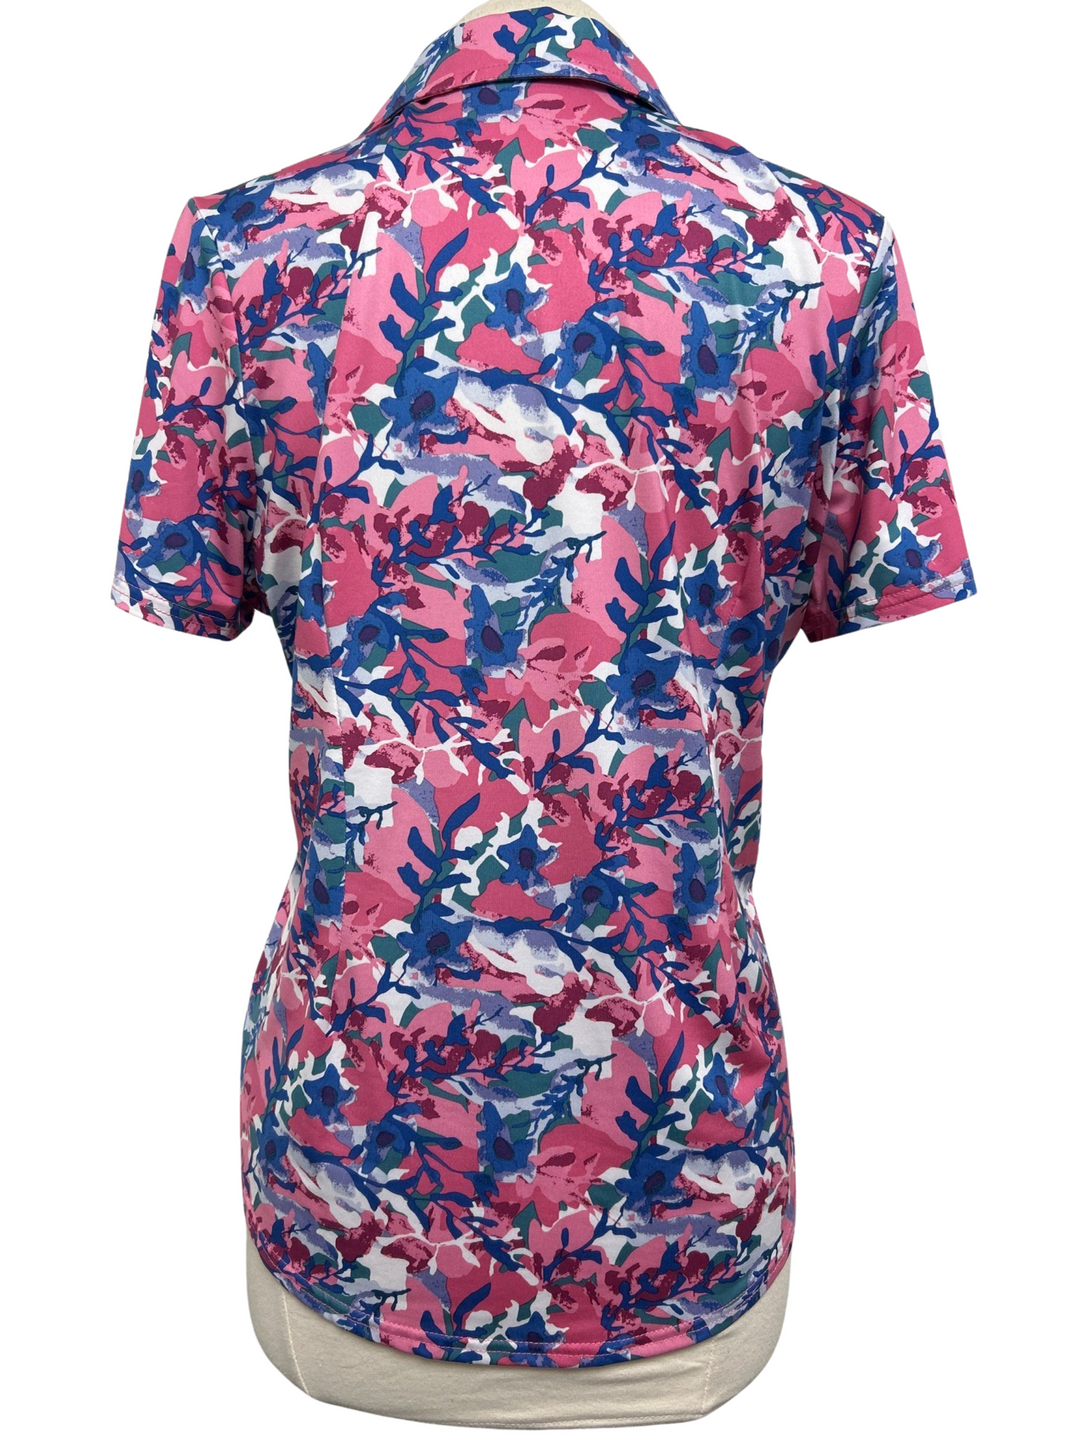 Jofit Pink Blue Floral Short Sleeve Top - Size Large - Skorzie